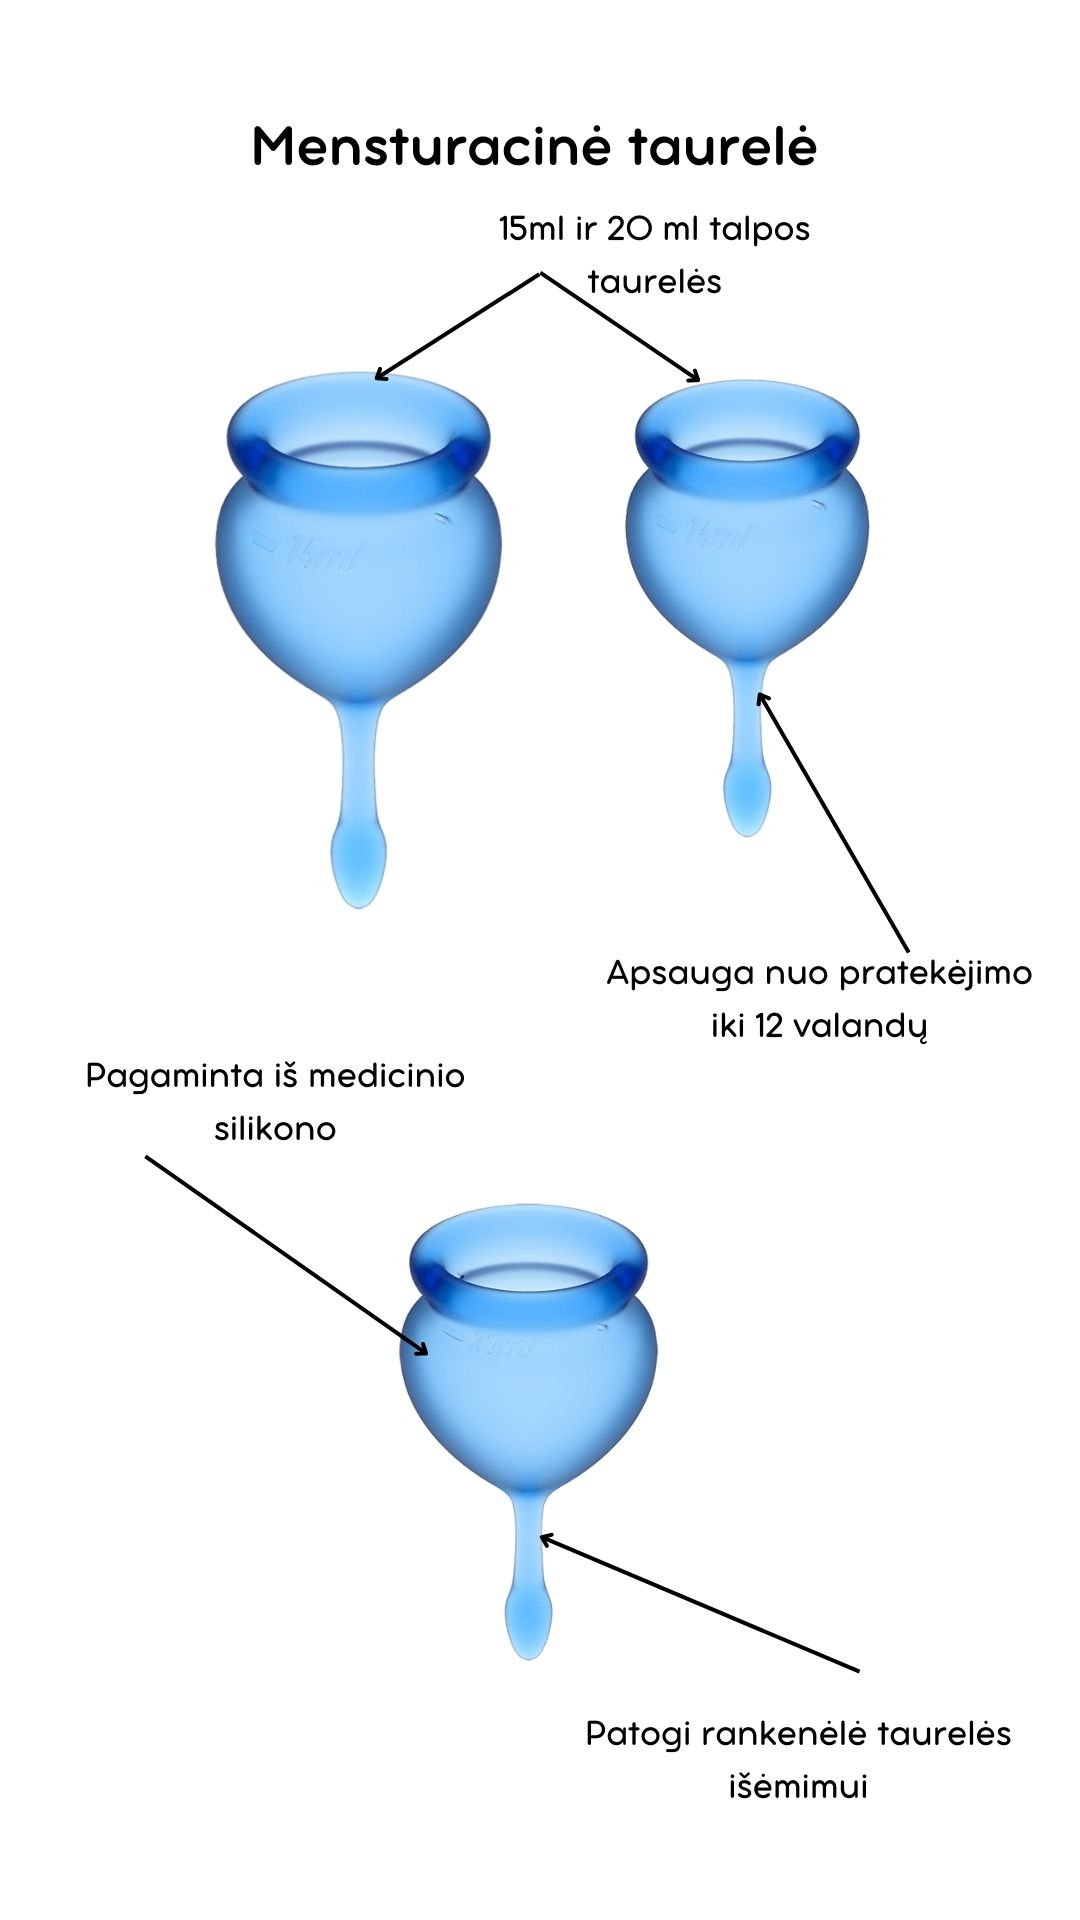 Menstruacinės taurelės Feel Good - Dark blue 
Mėlynos spalvos menstruacinės taurelės „Feel Good“ iš „Satisfyer“ yra puiki, ekologiška ir ekonomiška alternatyva tamponams ar higieniniams įklotams. 
Rinkinyje yra dvi skirtingo tūrio, iš medicininio ir kūnui saugaus silikono pagamintos taurelės, kurias paprasta įsidėti. 
Šios higieniškos, medicininės silikoninės ir lengvai įdedamos menstruacinės taurelės, pasižyminčios žaismingu dizainu, susideda iš dviejų dalių. 15 ml  ir 20 ml talpos, todėl tinka lengvesnėms ir sunkesnėms dienoms. 
Pailgas galiukas skirtas tam, kad taurelę būtų patogu ištraukti. 
Menstruacijų pradžioje galite rinktis 20 ml talpos taurelę, o pabaigoje – 15 ml. 
  
Kodėl rinktis menstruacinę taurelę? 
Jokio nemalonaus kvapo ir baimės, kad neturite susavimi įklotų! Su menstruacine taurele galite laisvai sportuoti, maudytis, miegoti ar bėgioti. 
Tai yra ekologiška alternatyva, kuri padeda saugoti planetą. 
Sutaupysite! Menstruacinė taurelė gali tarnauti kelis metus, todėl tai yra ekonomiška alternatyva su kuria sutaupysite iki 90% išlaidų, kurias skiriate įklotams ir tamponams. 
Jokio pratekėjimo iki 12 valandų! Menstruacinę taurelę galite įsidėti ryte, o išsiimti ir ištuštinti tik vakare.  
Kas gali naudoti menstruacinę taurelę? 
Daugiau ir mažiau kraujuojančios.  
Gimdžiusios ir negimdžiusios moterys.  
Moterys, neturėjusios lytinių santykių.  
Ar taurelė nepratekės? 
Tam, kad menstruacinė taurelė nepratekėtų, ji turi tinkamai išsiskleisti viduje. Tam, kad įsitikintumėte, jog taurelė tinkamai atsidarė, galite su pirštu perbraukti per kraštelį ir patikrinti, ar nesusiformavo raukšlės. Jei taurelė teisingai atsidarė, bus susidaręs vakuumas.  
Taurelė gali pratekėti, jei mėnesinės yra itin gausios, kad to nenutiktų – turite stebėti mėnesinių gausą ir rekomenduojama dažniau ištuštinti taurelę, kol suprasite kas kiek valandų jums reikia ją tuštinti ir atrasite tavo ritmą.  
Kaip ištuštinti taurelę? 
Taurelę rekomenduojama ištuštinti kas 12 valandų ar dažniau, jei kraujuojate gausiau. Ištuštinus taurelę ją nuplaukite po tekančiu vandeniu ir dezinfekuokite.  
Kaip įsidėti menstruacinę taurelę? 
Prieš naudojant menstruacinę taurelę, ją reikia pavirti 3-5 minutes vandenyje.  
Nusiplaukite rankas ir atsisėdusi ant unitazo praskėskite kojas. 
Spustelkite rodomuoju pirštu per vienos taurelės briaunos vidurį (taurelė bus U formos).  
Lengvai stumiant, įdėkite taurelę į makštį. 
Kaip išimti menstruacinę taurelę? 
Taurelę išsitraukti galite timptelėjusios už jos uodegėlės, o kraują išpilkite į unitazą. Taurelę praplaukite ir galite ją naudoti vėl. Pasibaigus mėnesinėms, taurelę pavirkite vandenyje.  
Šlapinantis ar tuštinantis taurelės išsiimti nereikia.